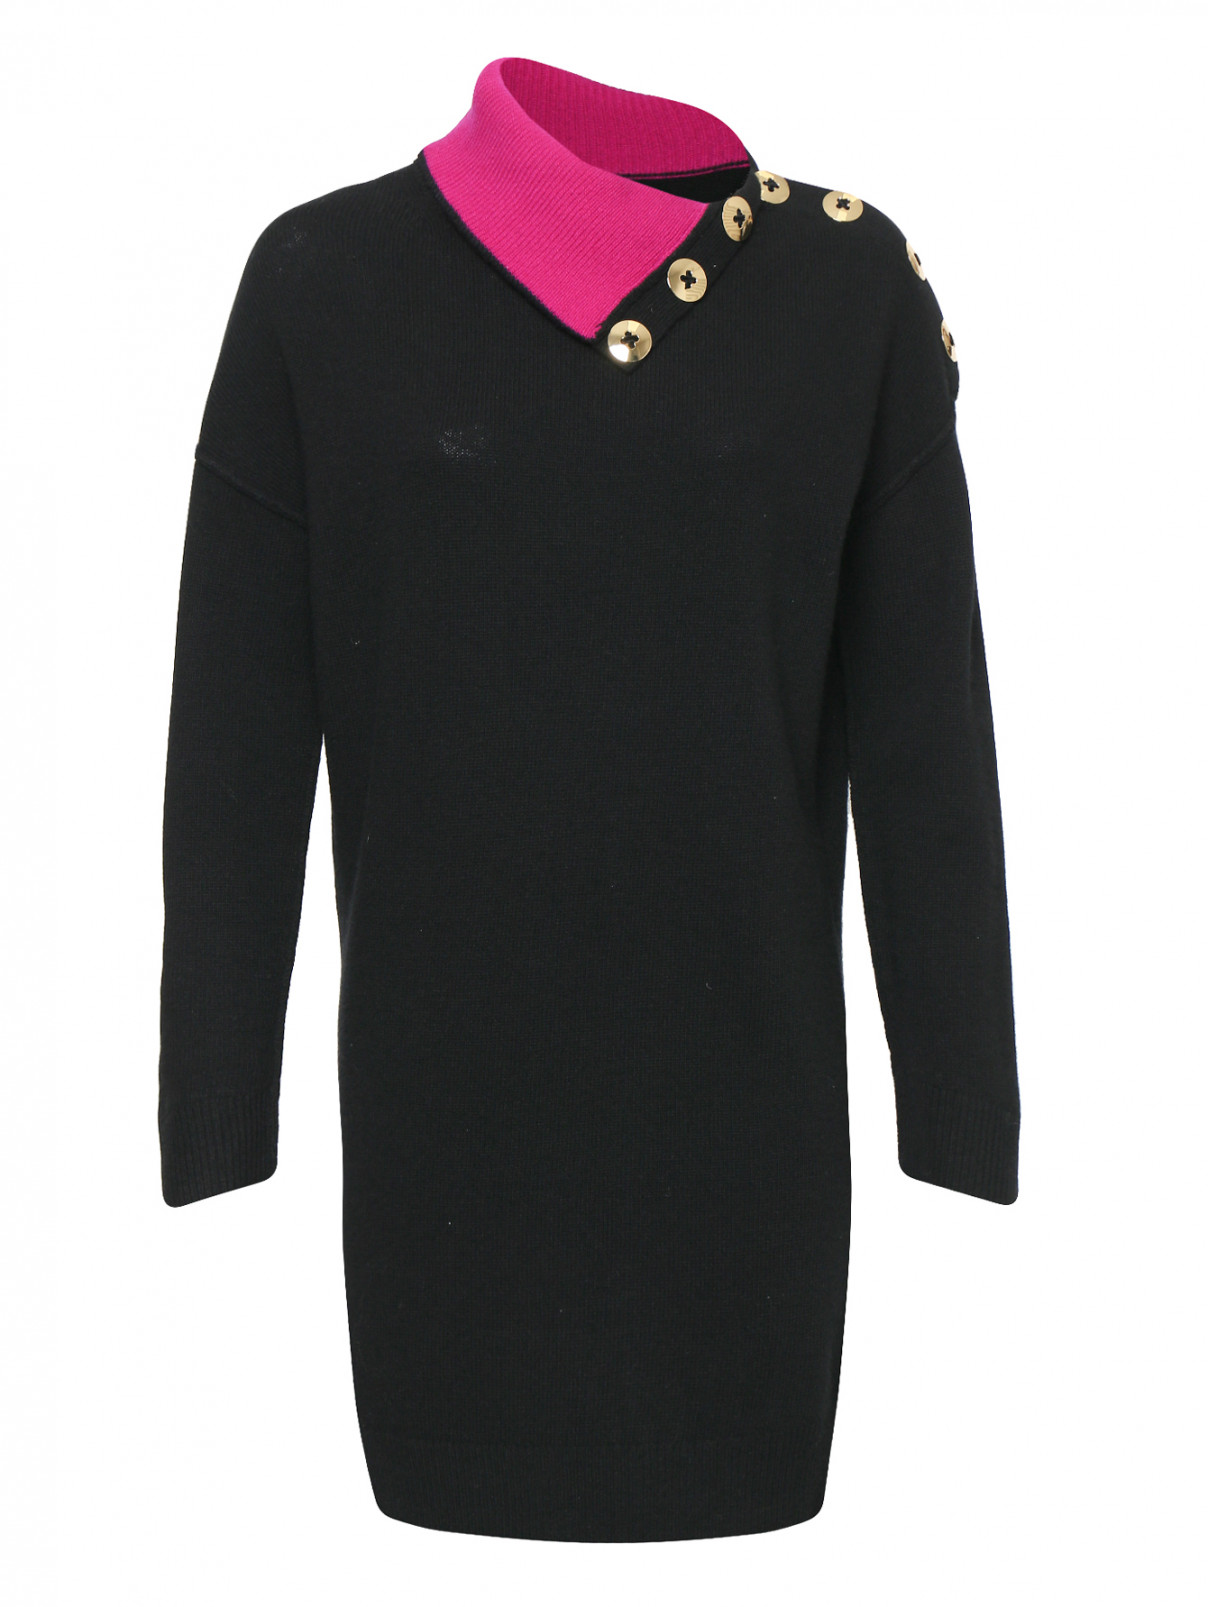 Платье из шерсти с декоративными пуговицами Marc Jacobs  –  Общий вид  – Цвет:  Черный